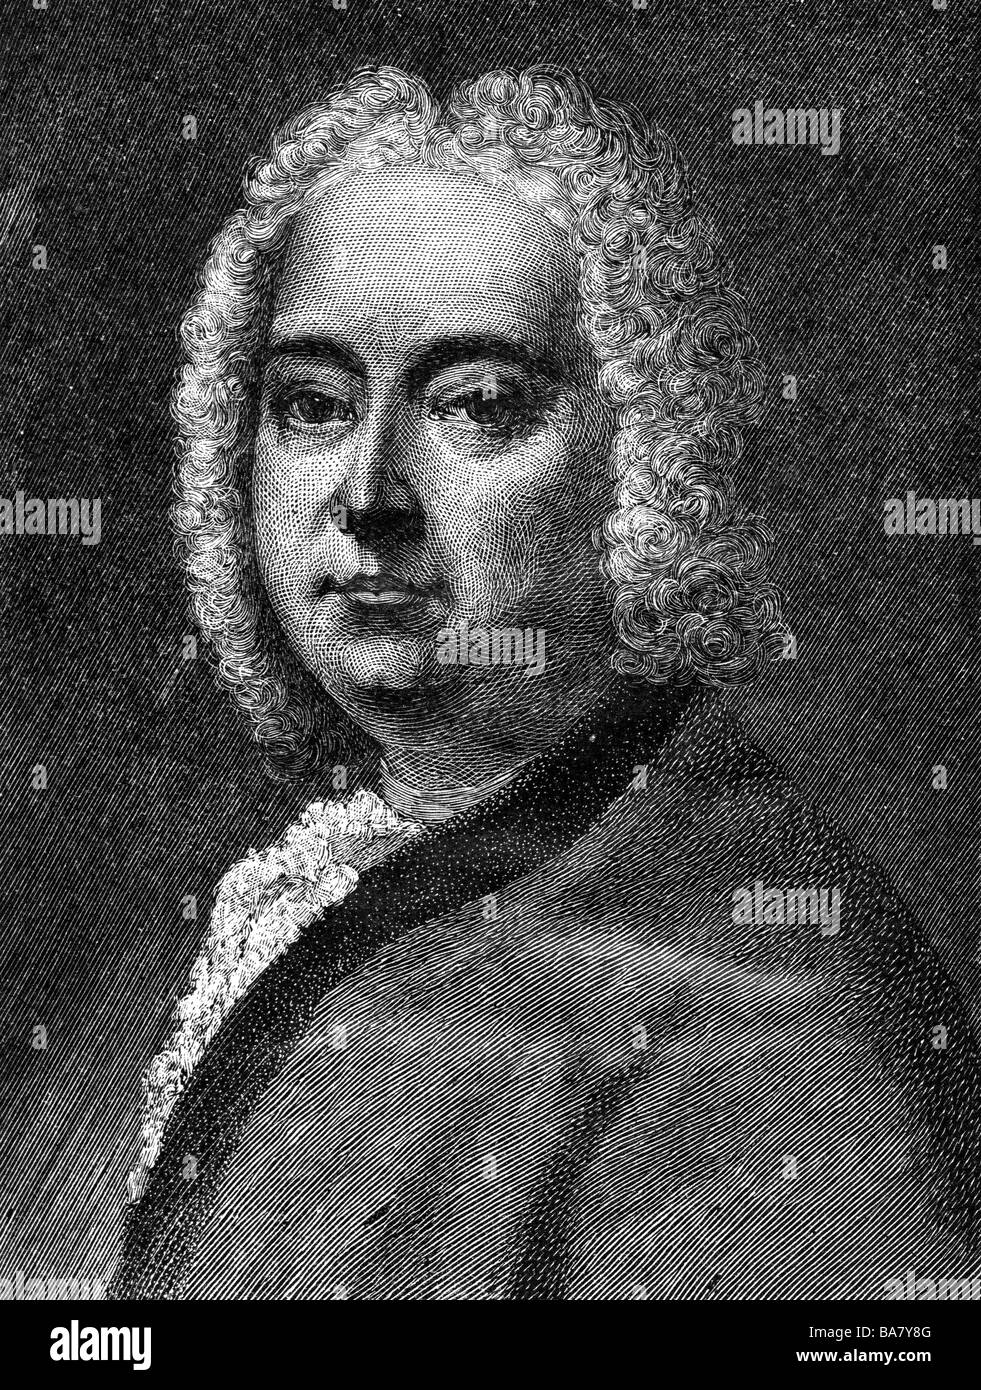 Handel, George Frederic, 23.2.1685 - 14.4.1759, compositor alemán, retrato, grabado en madera por Moritz Klinkicht, siglo 19, , Foto de stock